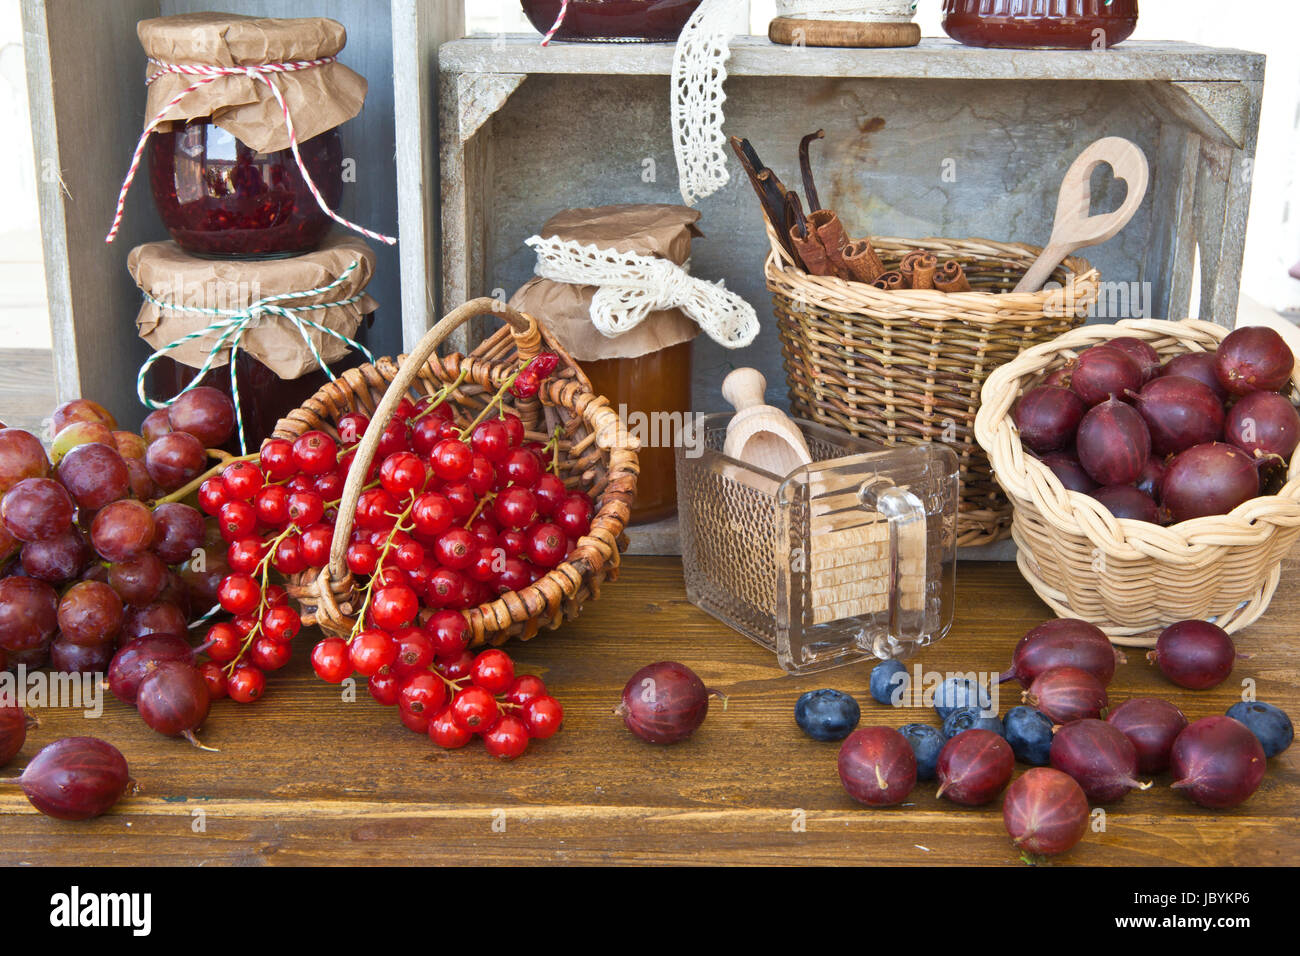 Frisches Obst und Zutaten zum Marmelade einkochen Stock Photo